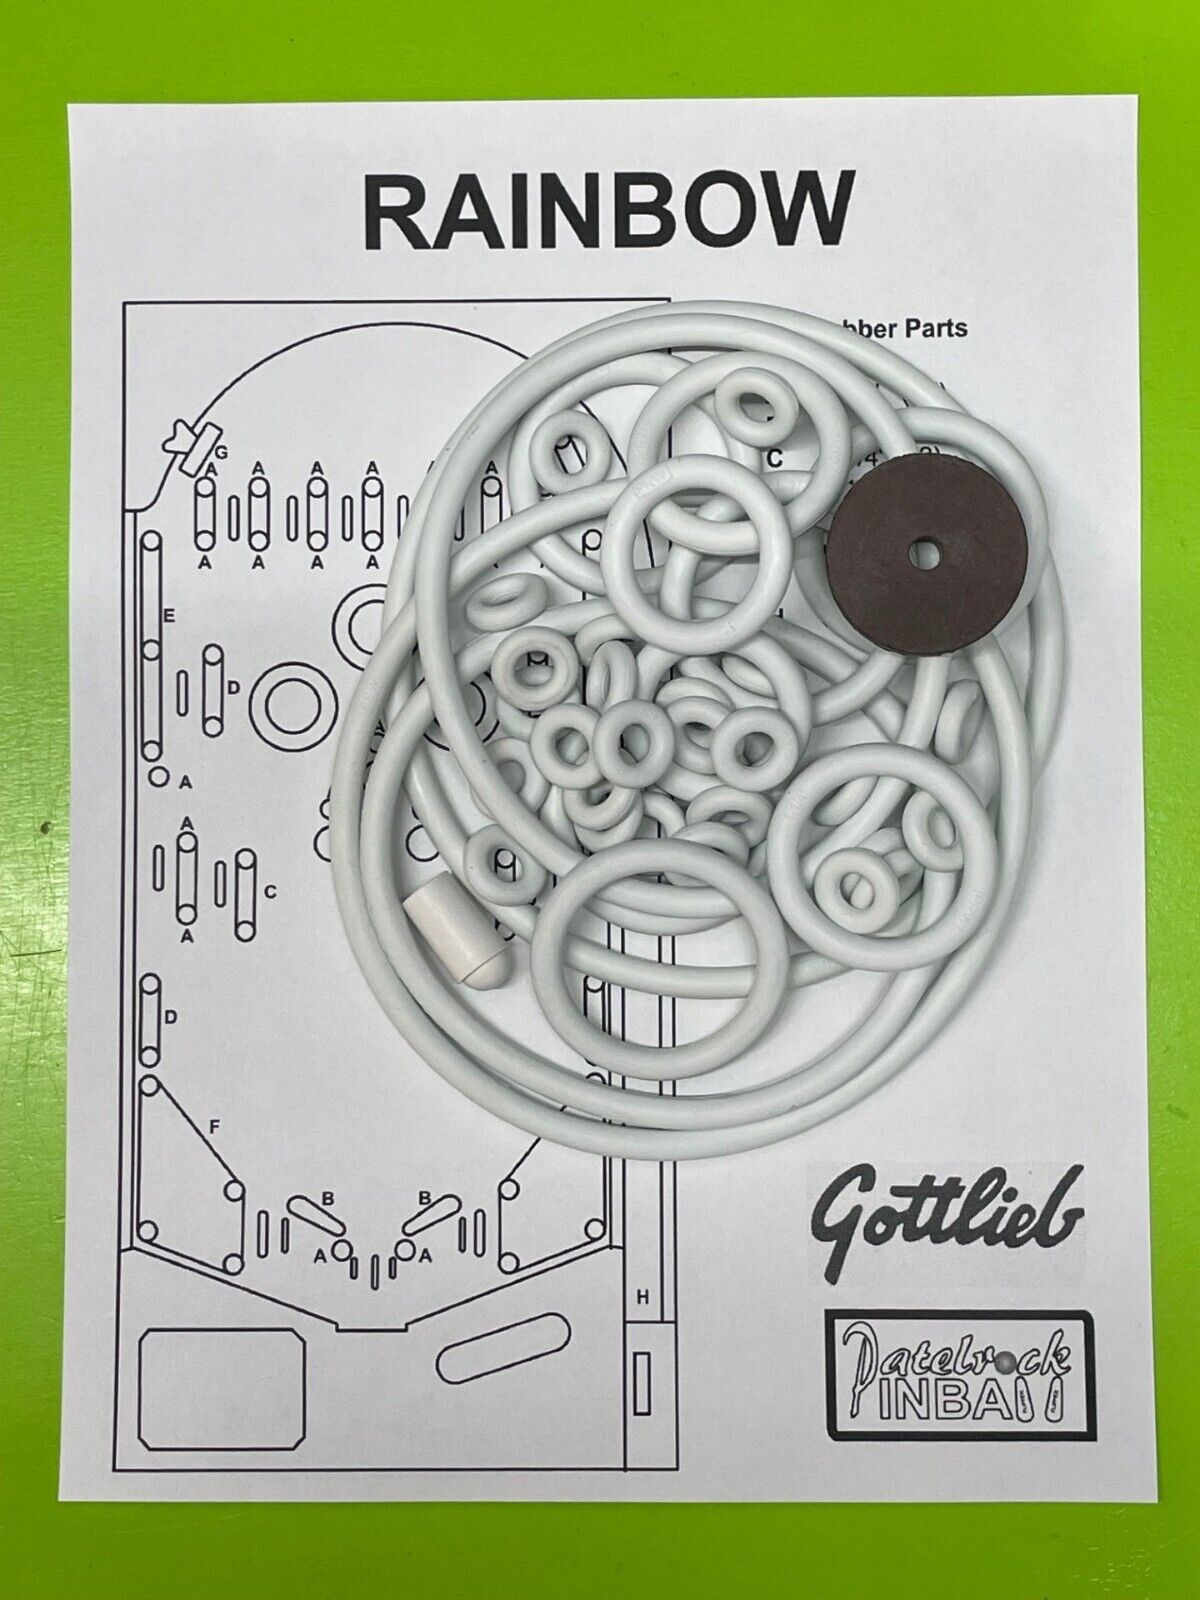 1956 Gottlieb Rainbow Pinball Machine Rubber Ring Kit